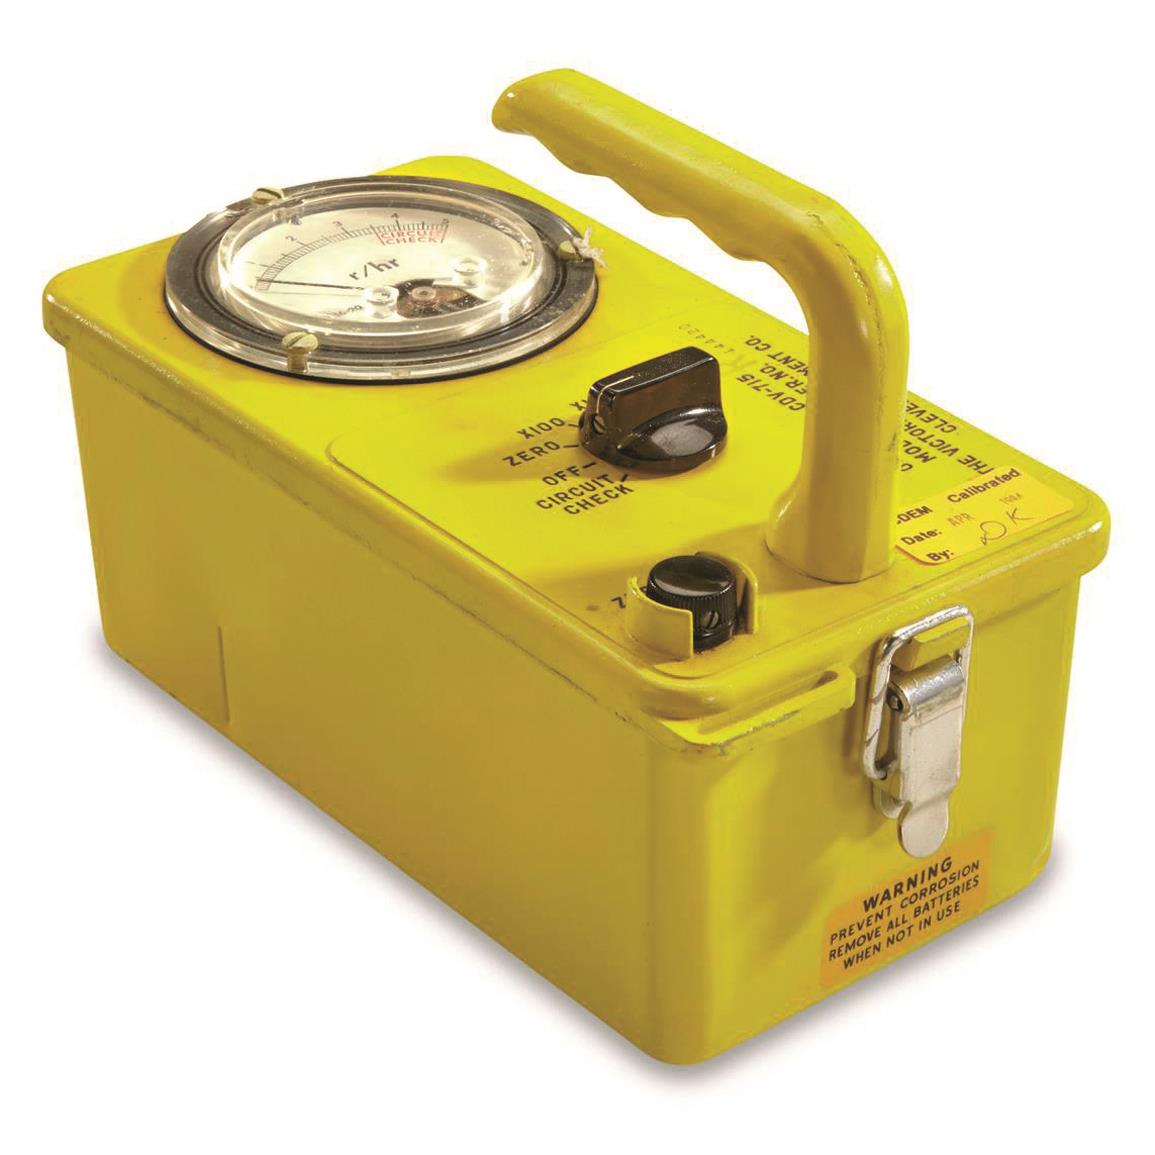 U.S. Military Surplus Portable Radiation Detector, Used